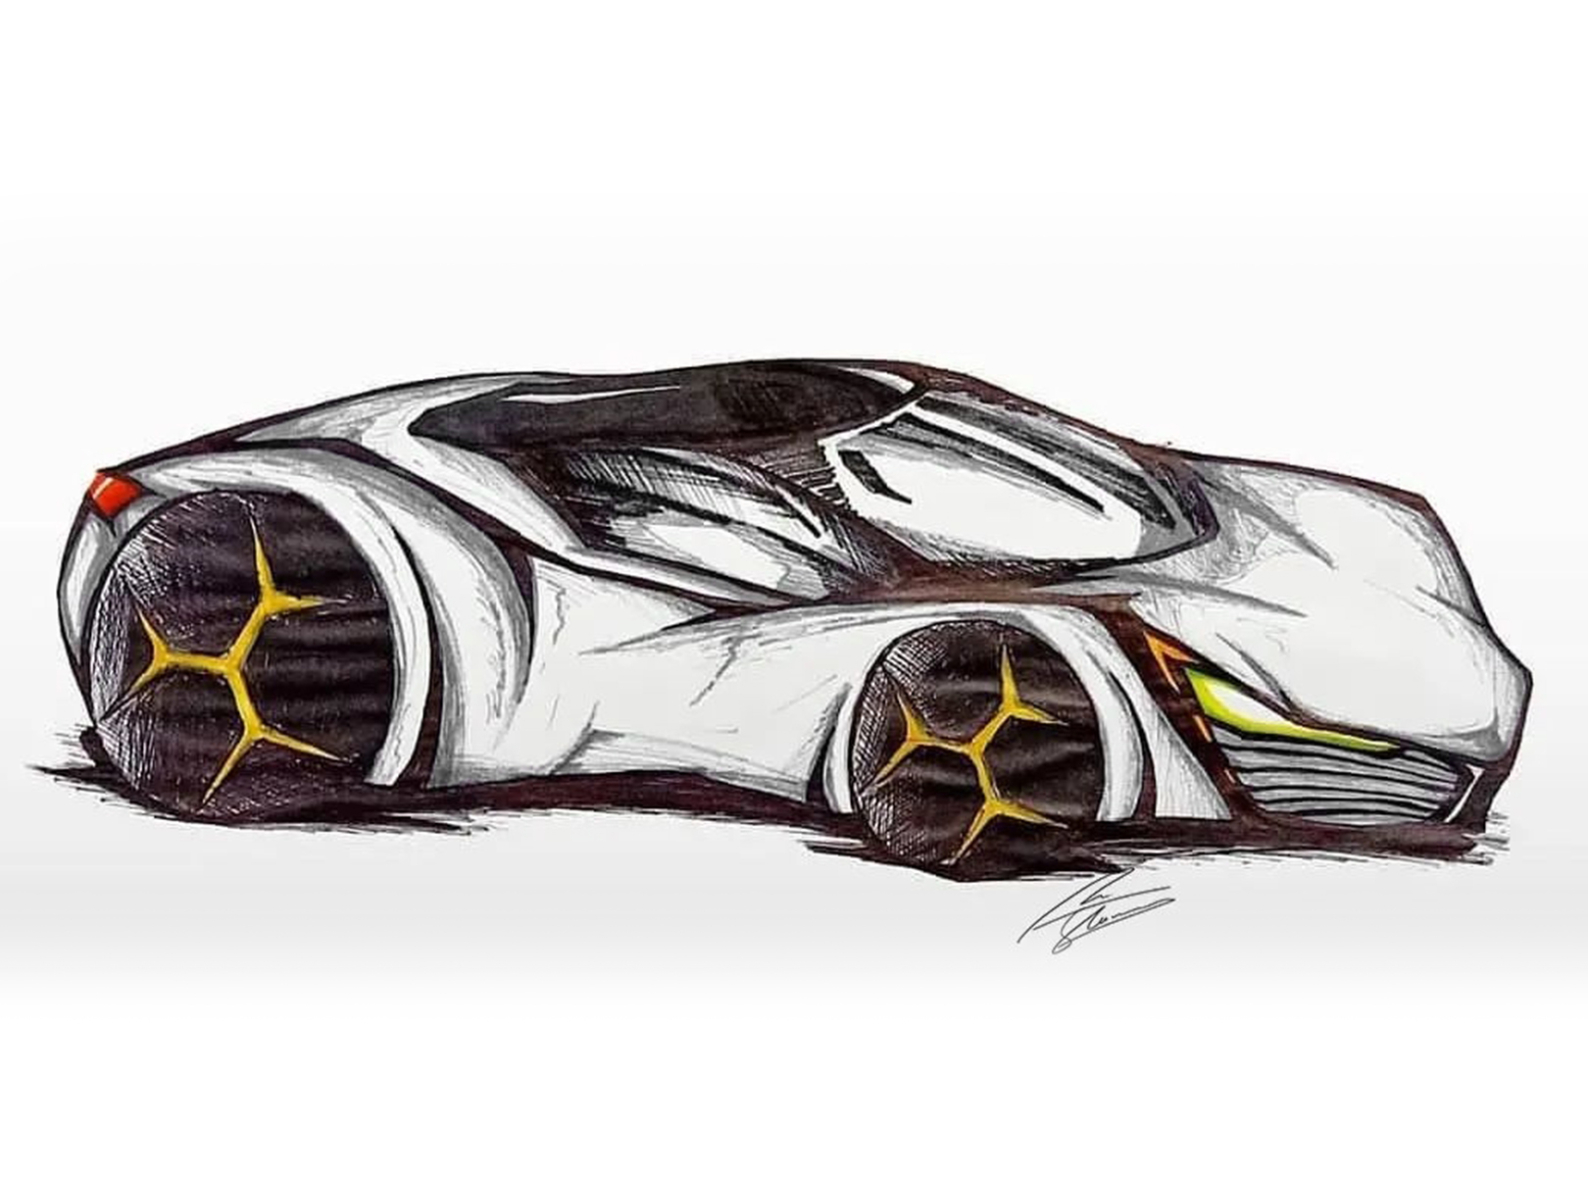 2011 Jaguar C-X16 concept supercar supercars drawing sketch pencil art  wallpaper | 2872x2000 | 80997 | WallpaperUP